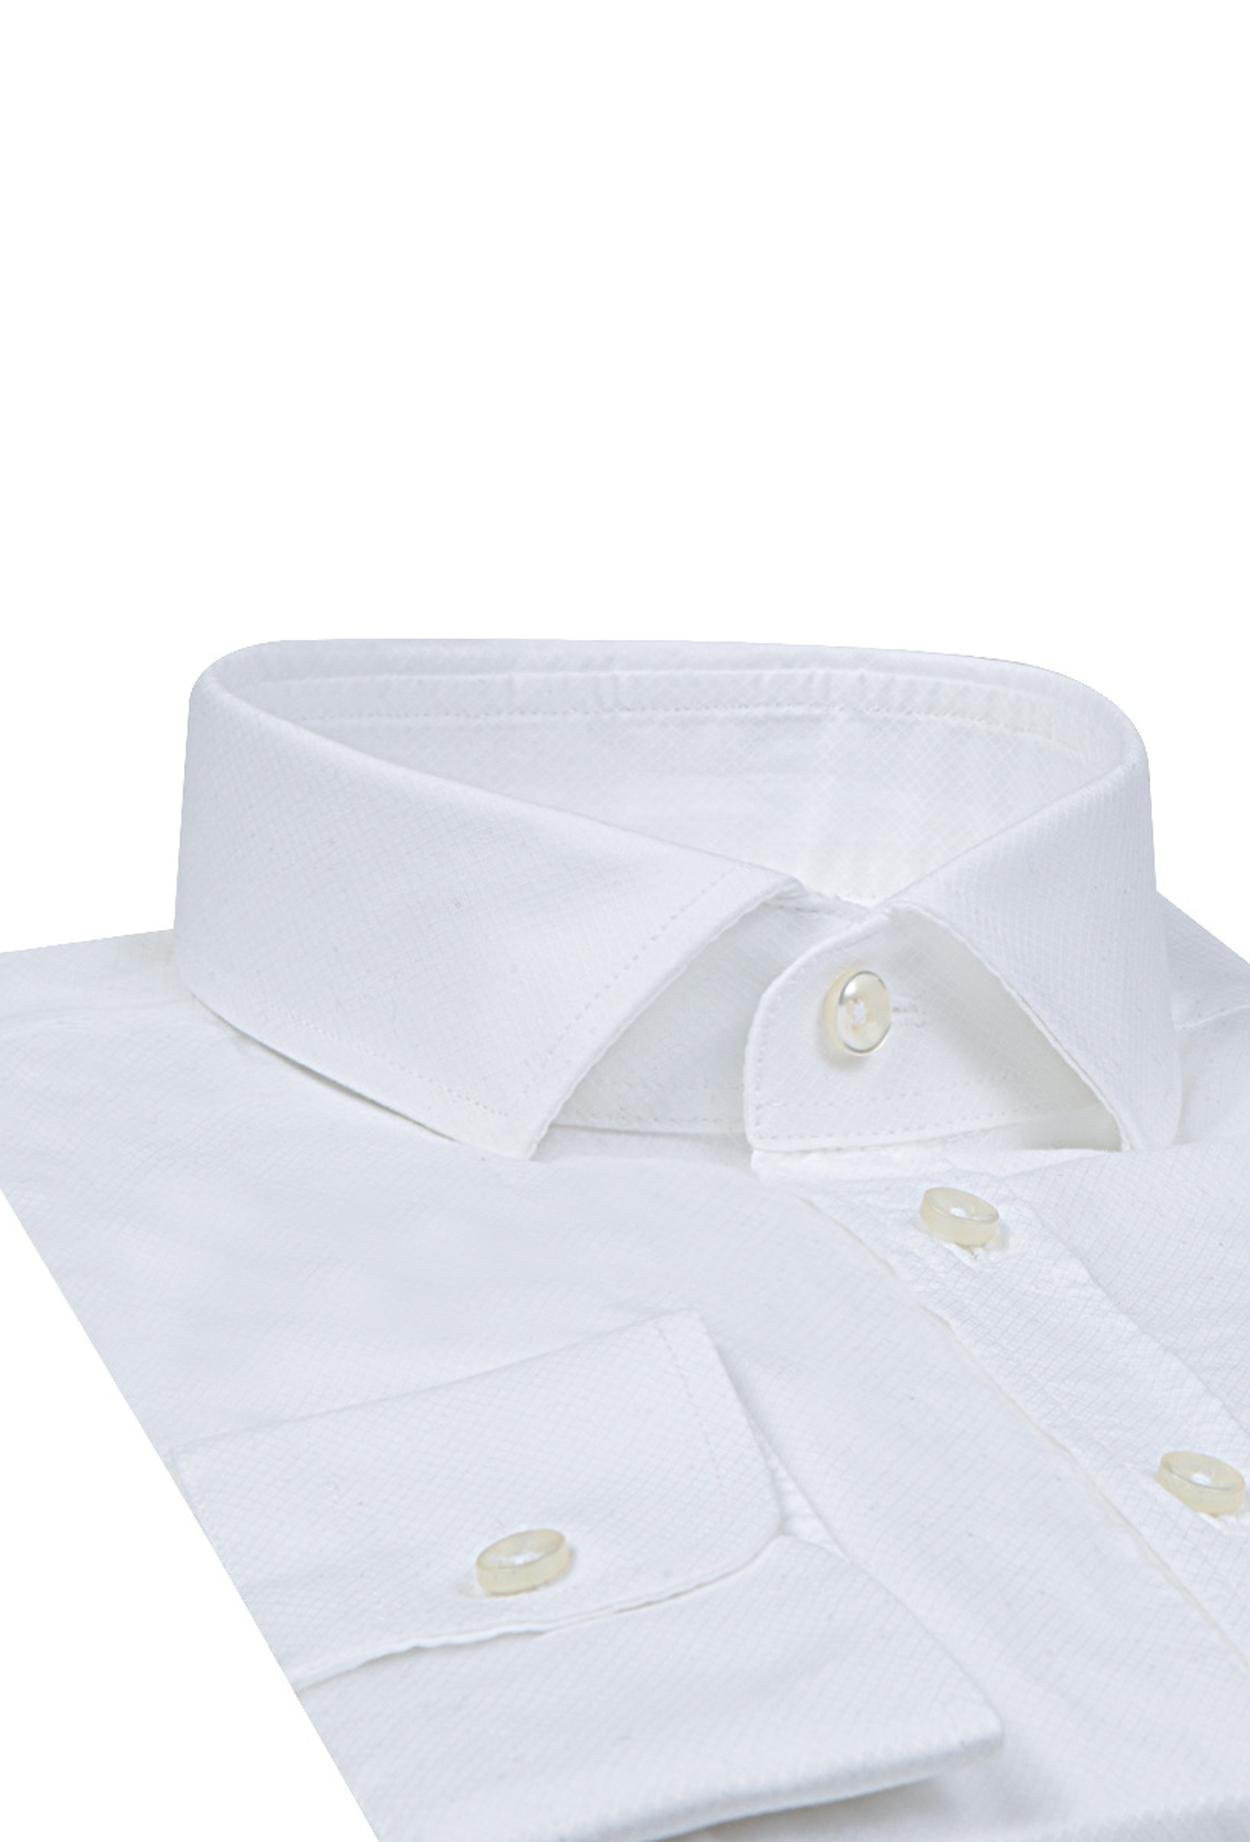 Twn Slim Fit Beyaz Düz Gömlek